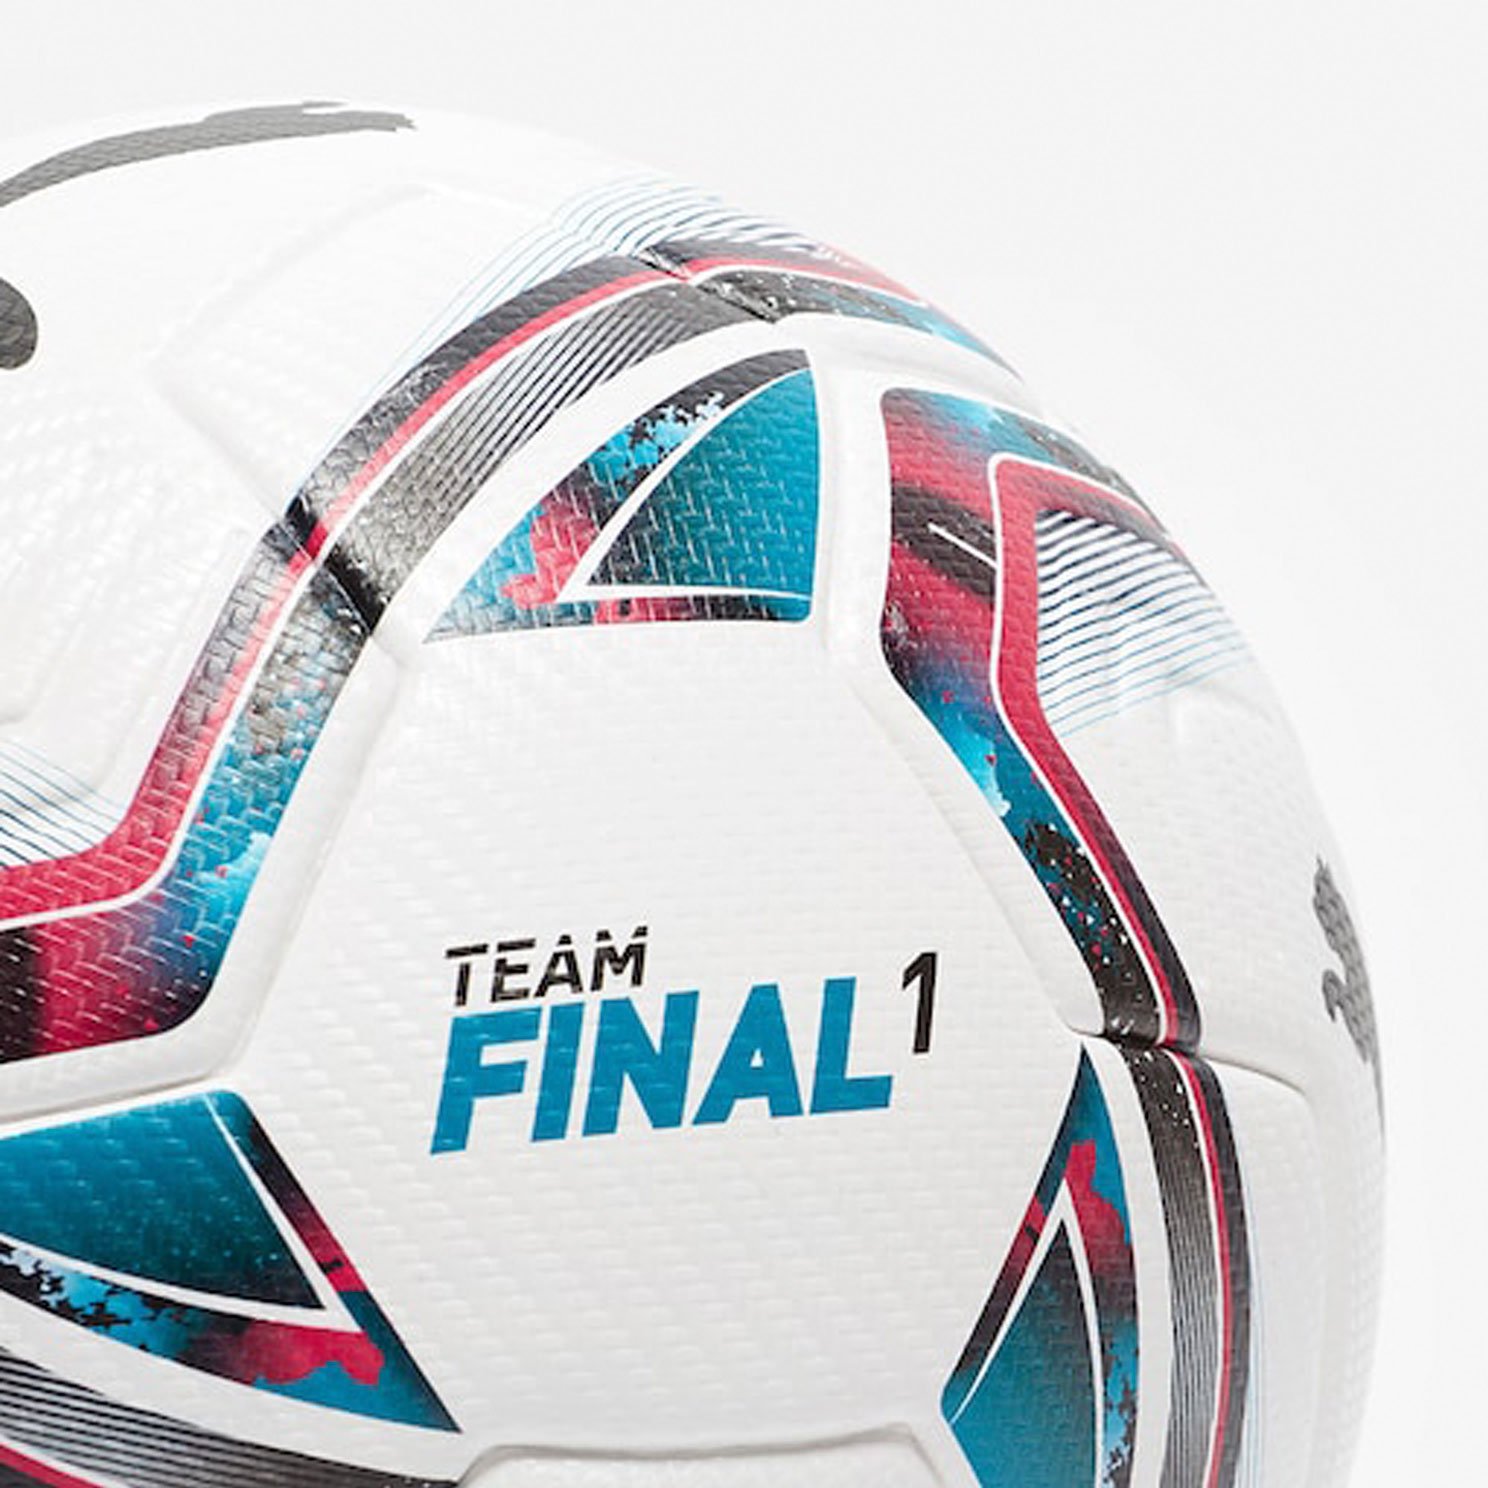 Мяч футбольный Puma teamFINAL 21.1 - официальный мяч ФНЛ 2021/22